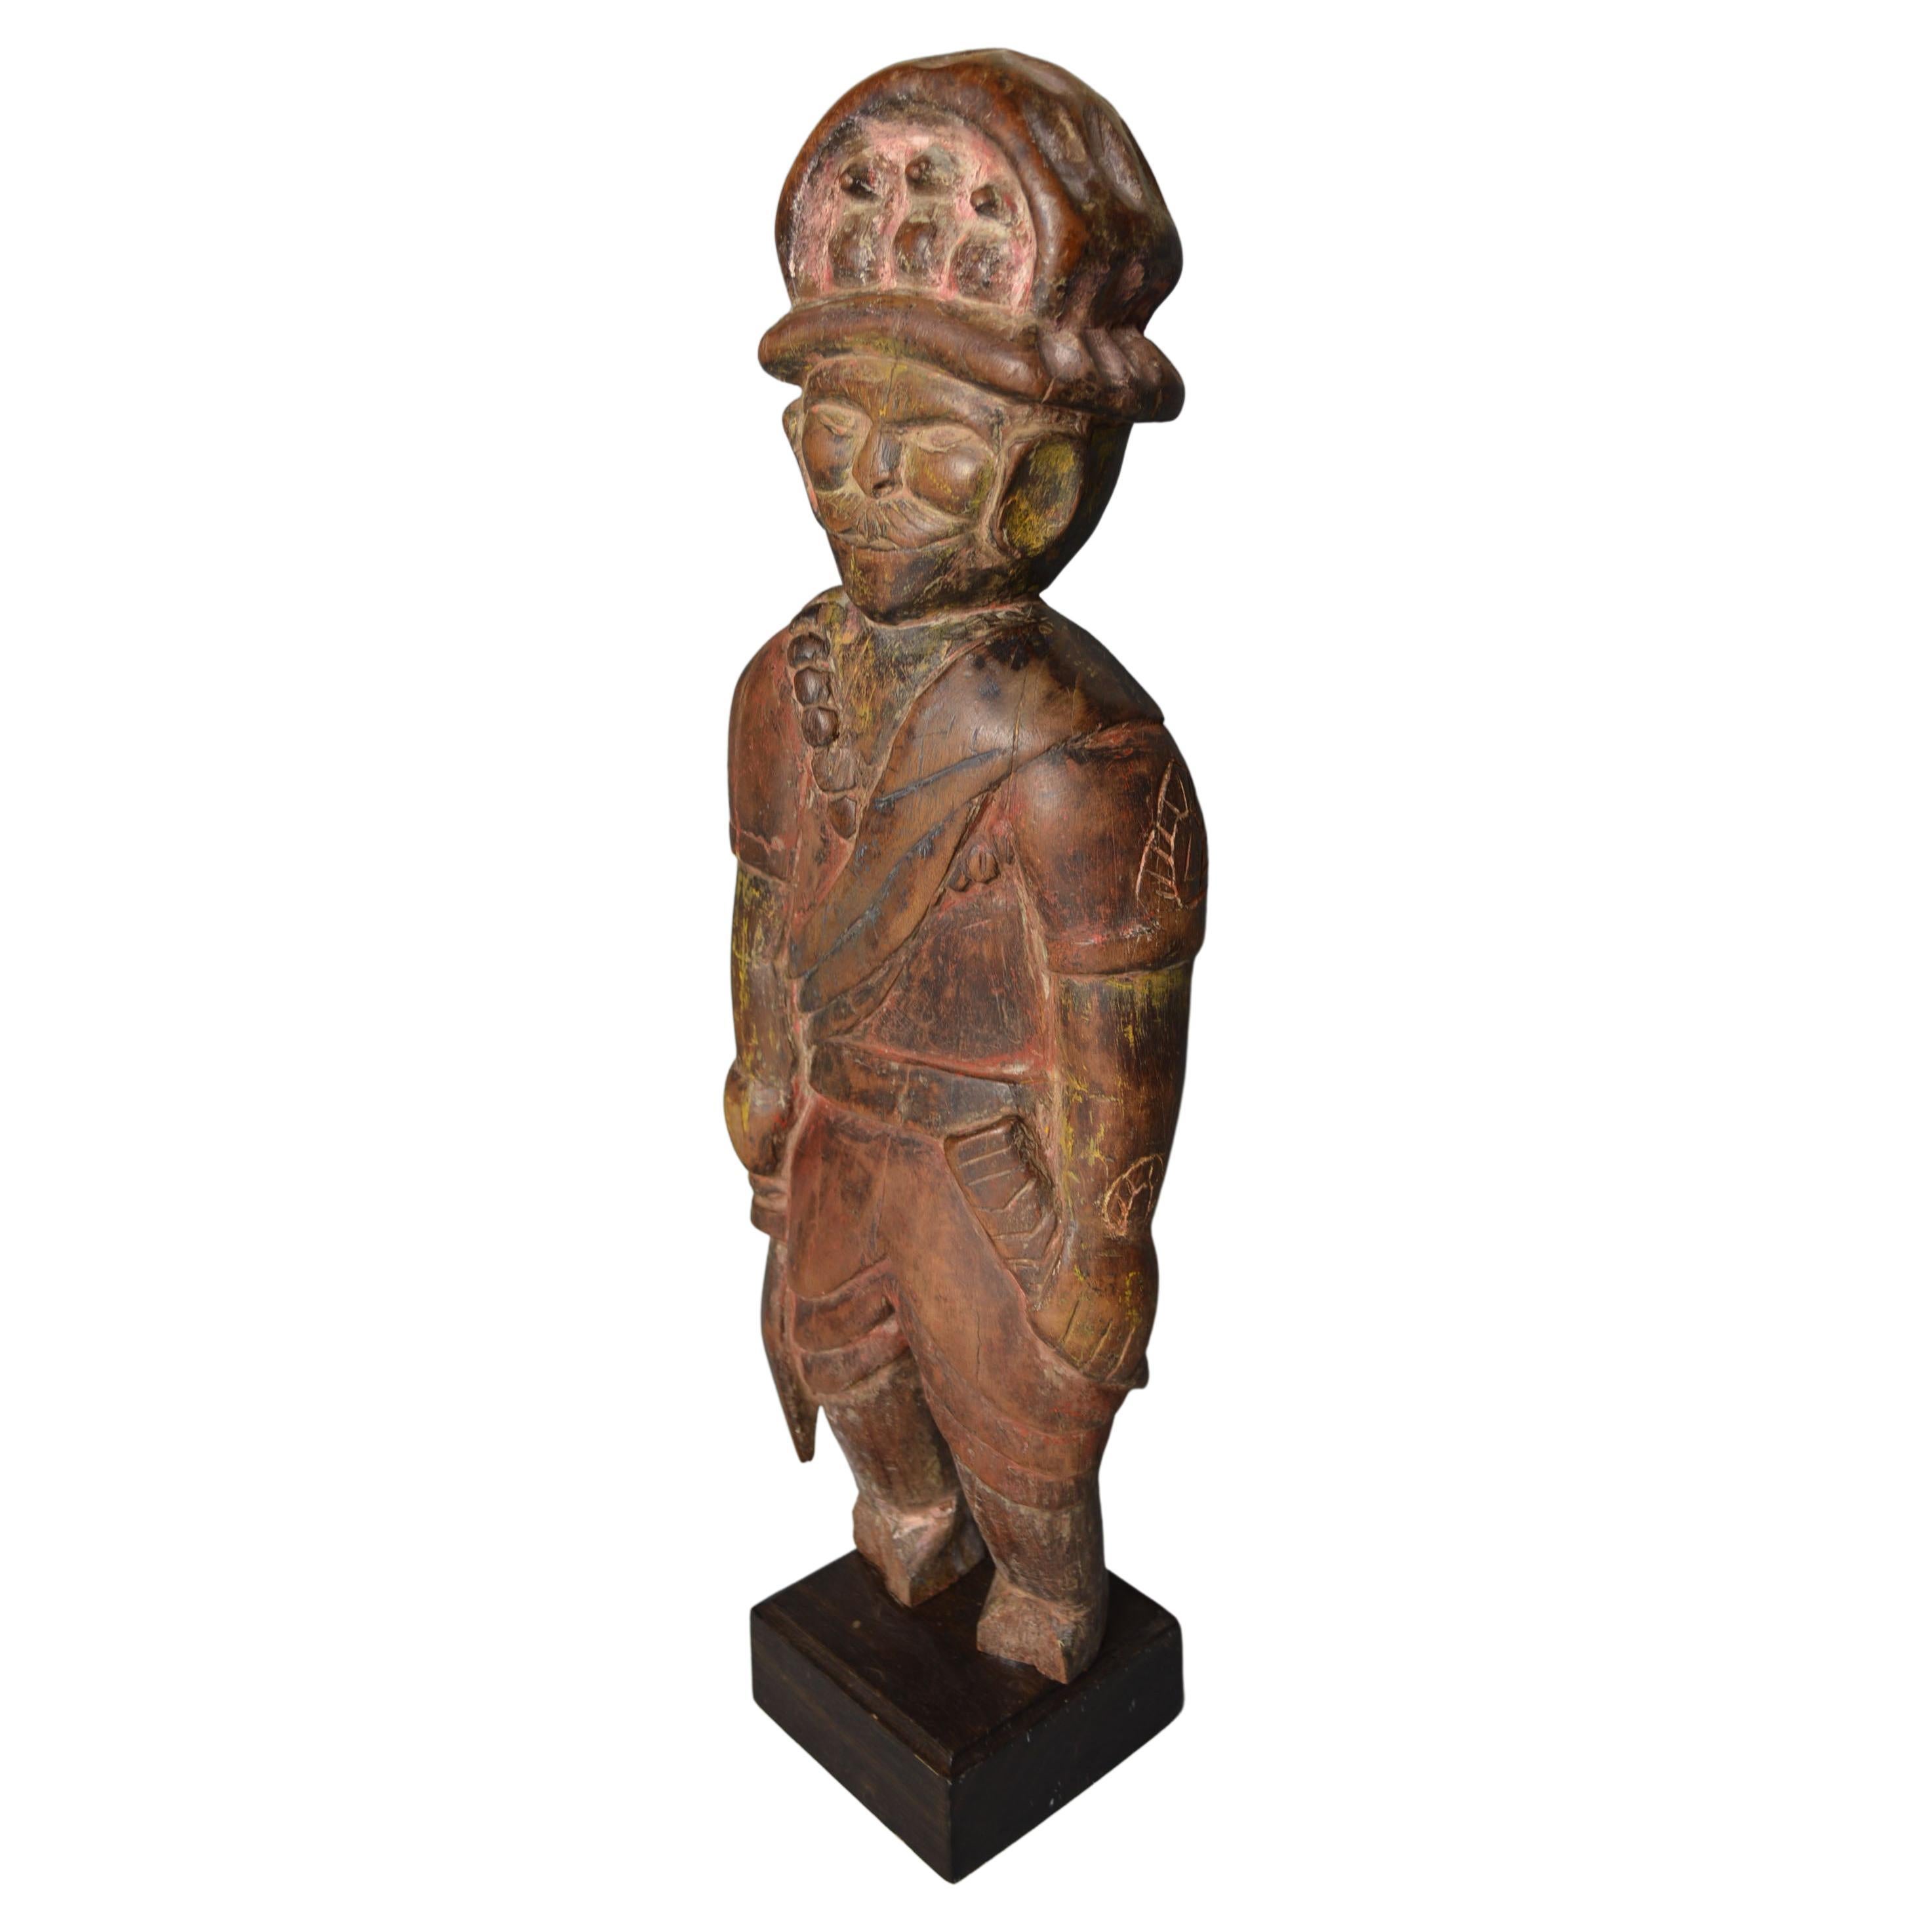 Rare vieux Himalaya Tibetan Wood Carved Folk art figure Tribal Art Asian Antiques